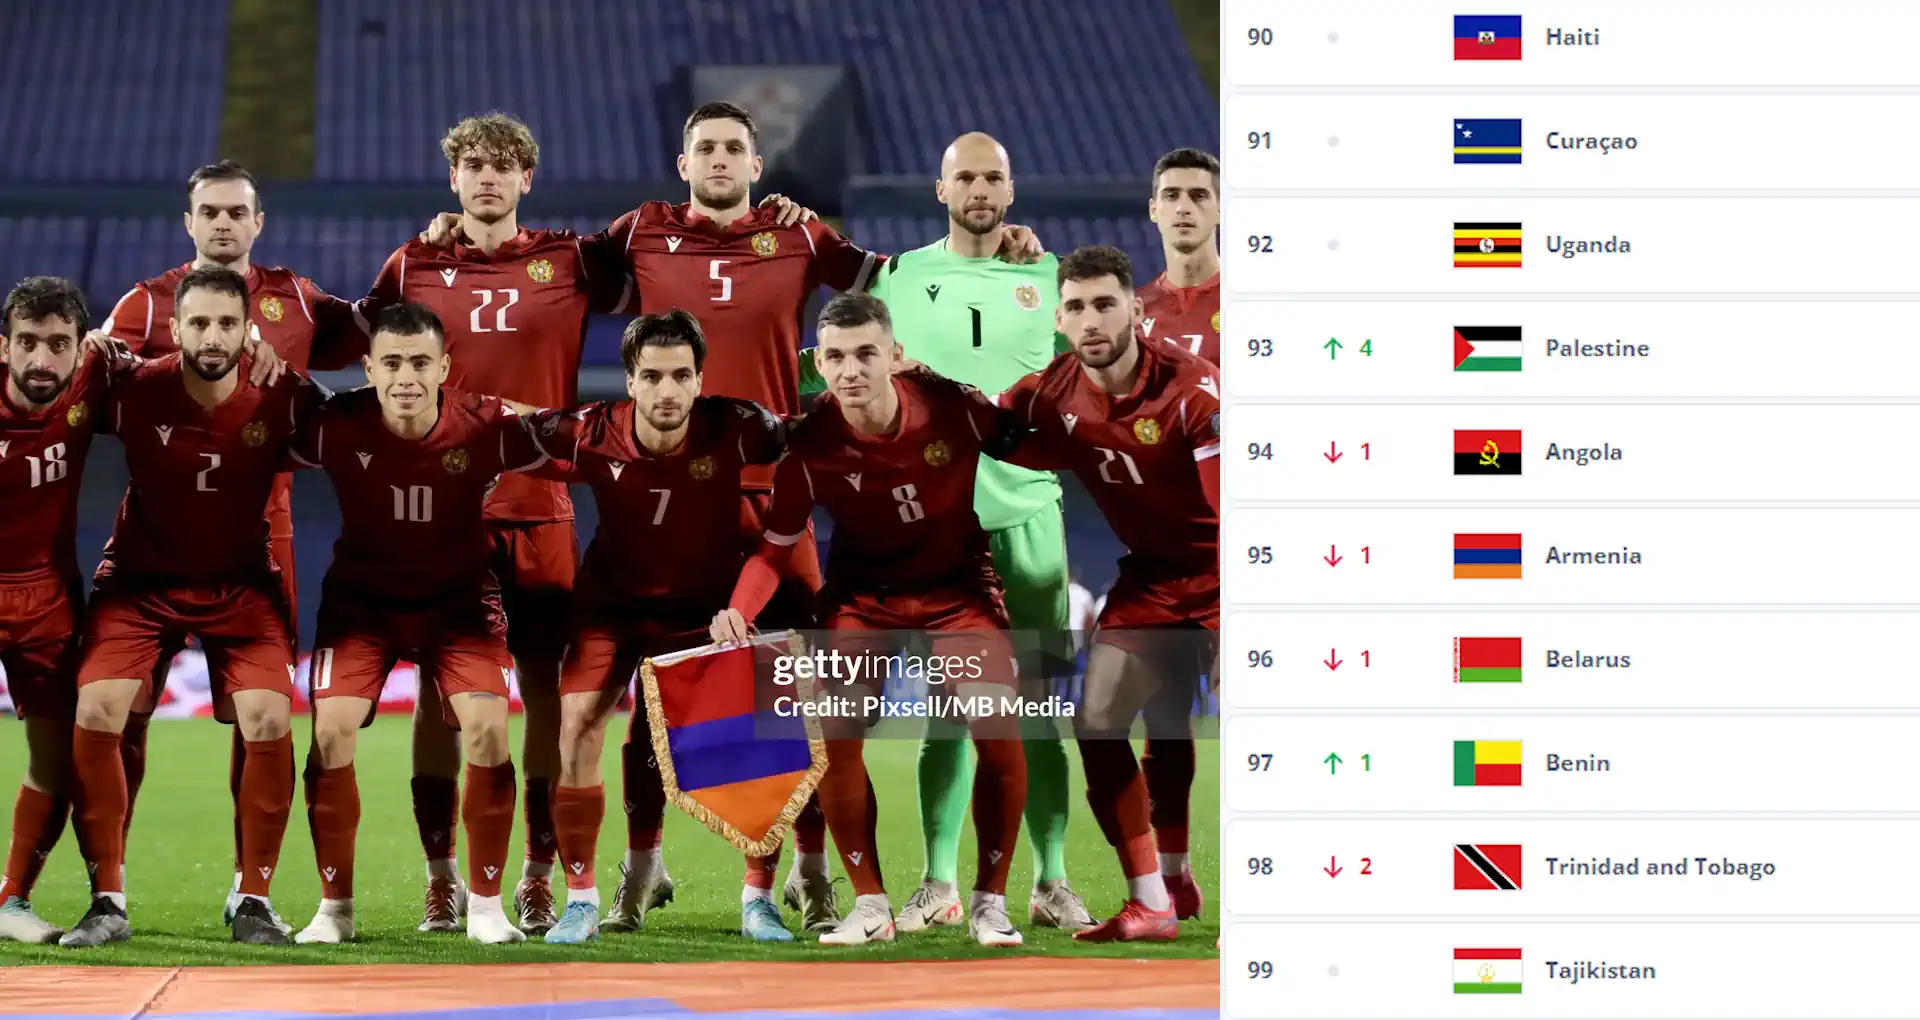 Изменилась позиция сборной Армении в рейтинге ФИФА на апрель